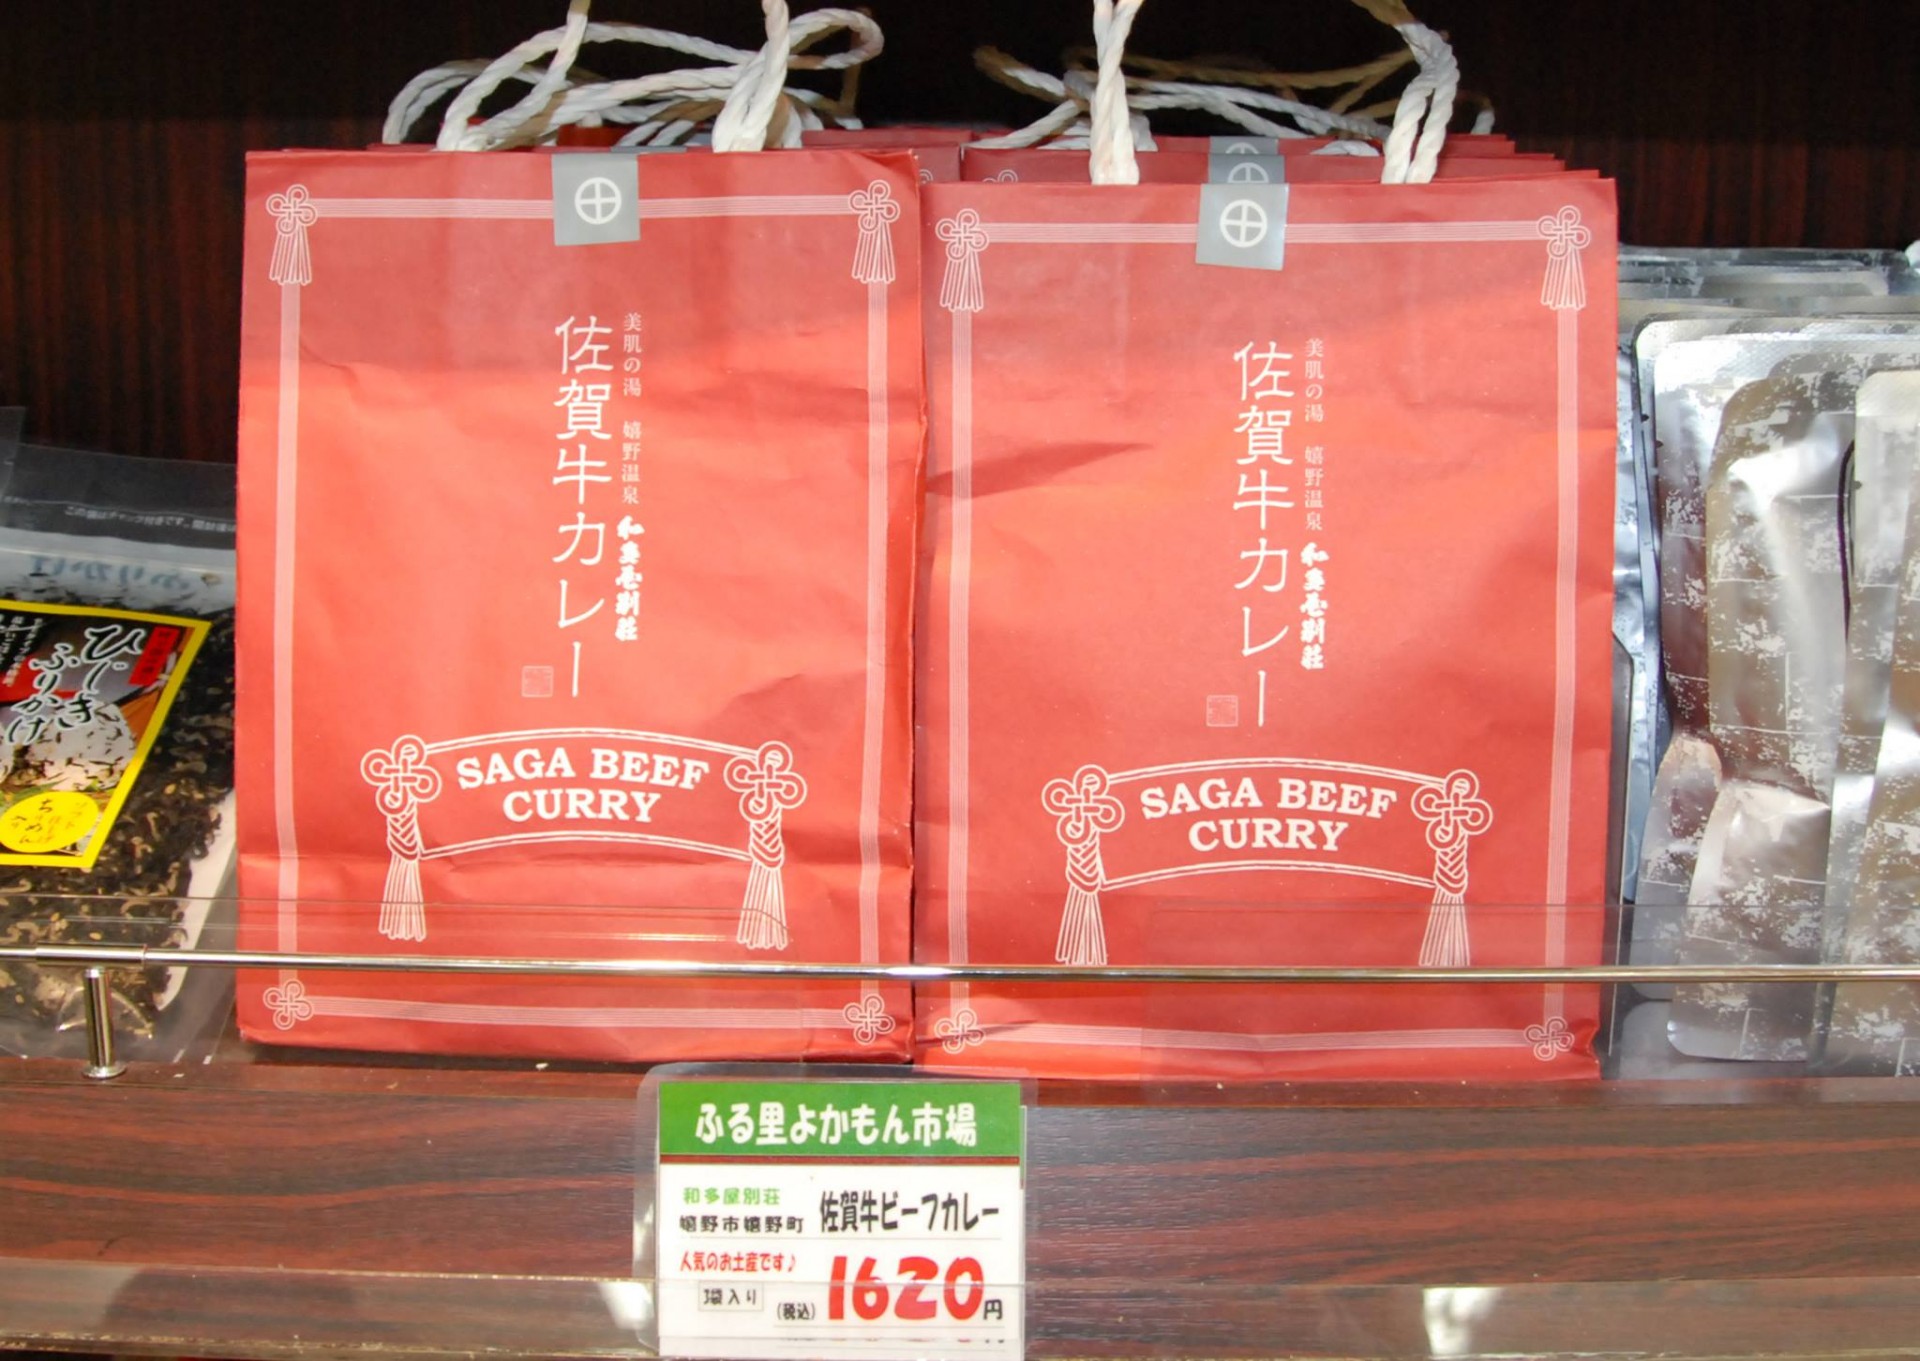 手土産にぴったりな3個入り手提げ袋の和多屋別荘 特製佐賀牛カレー